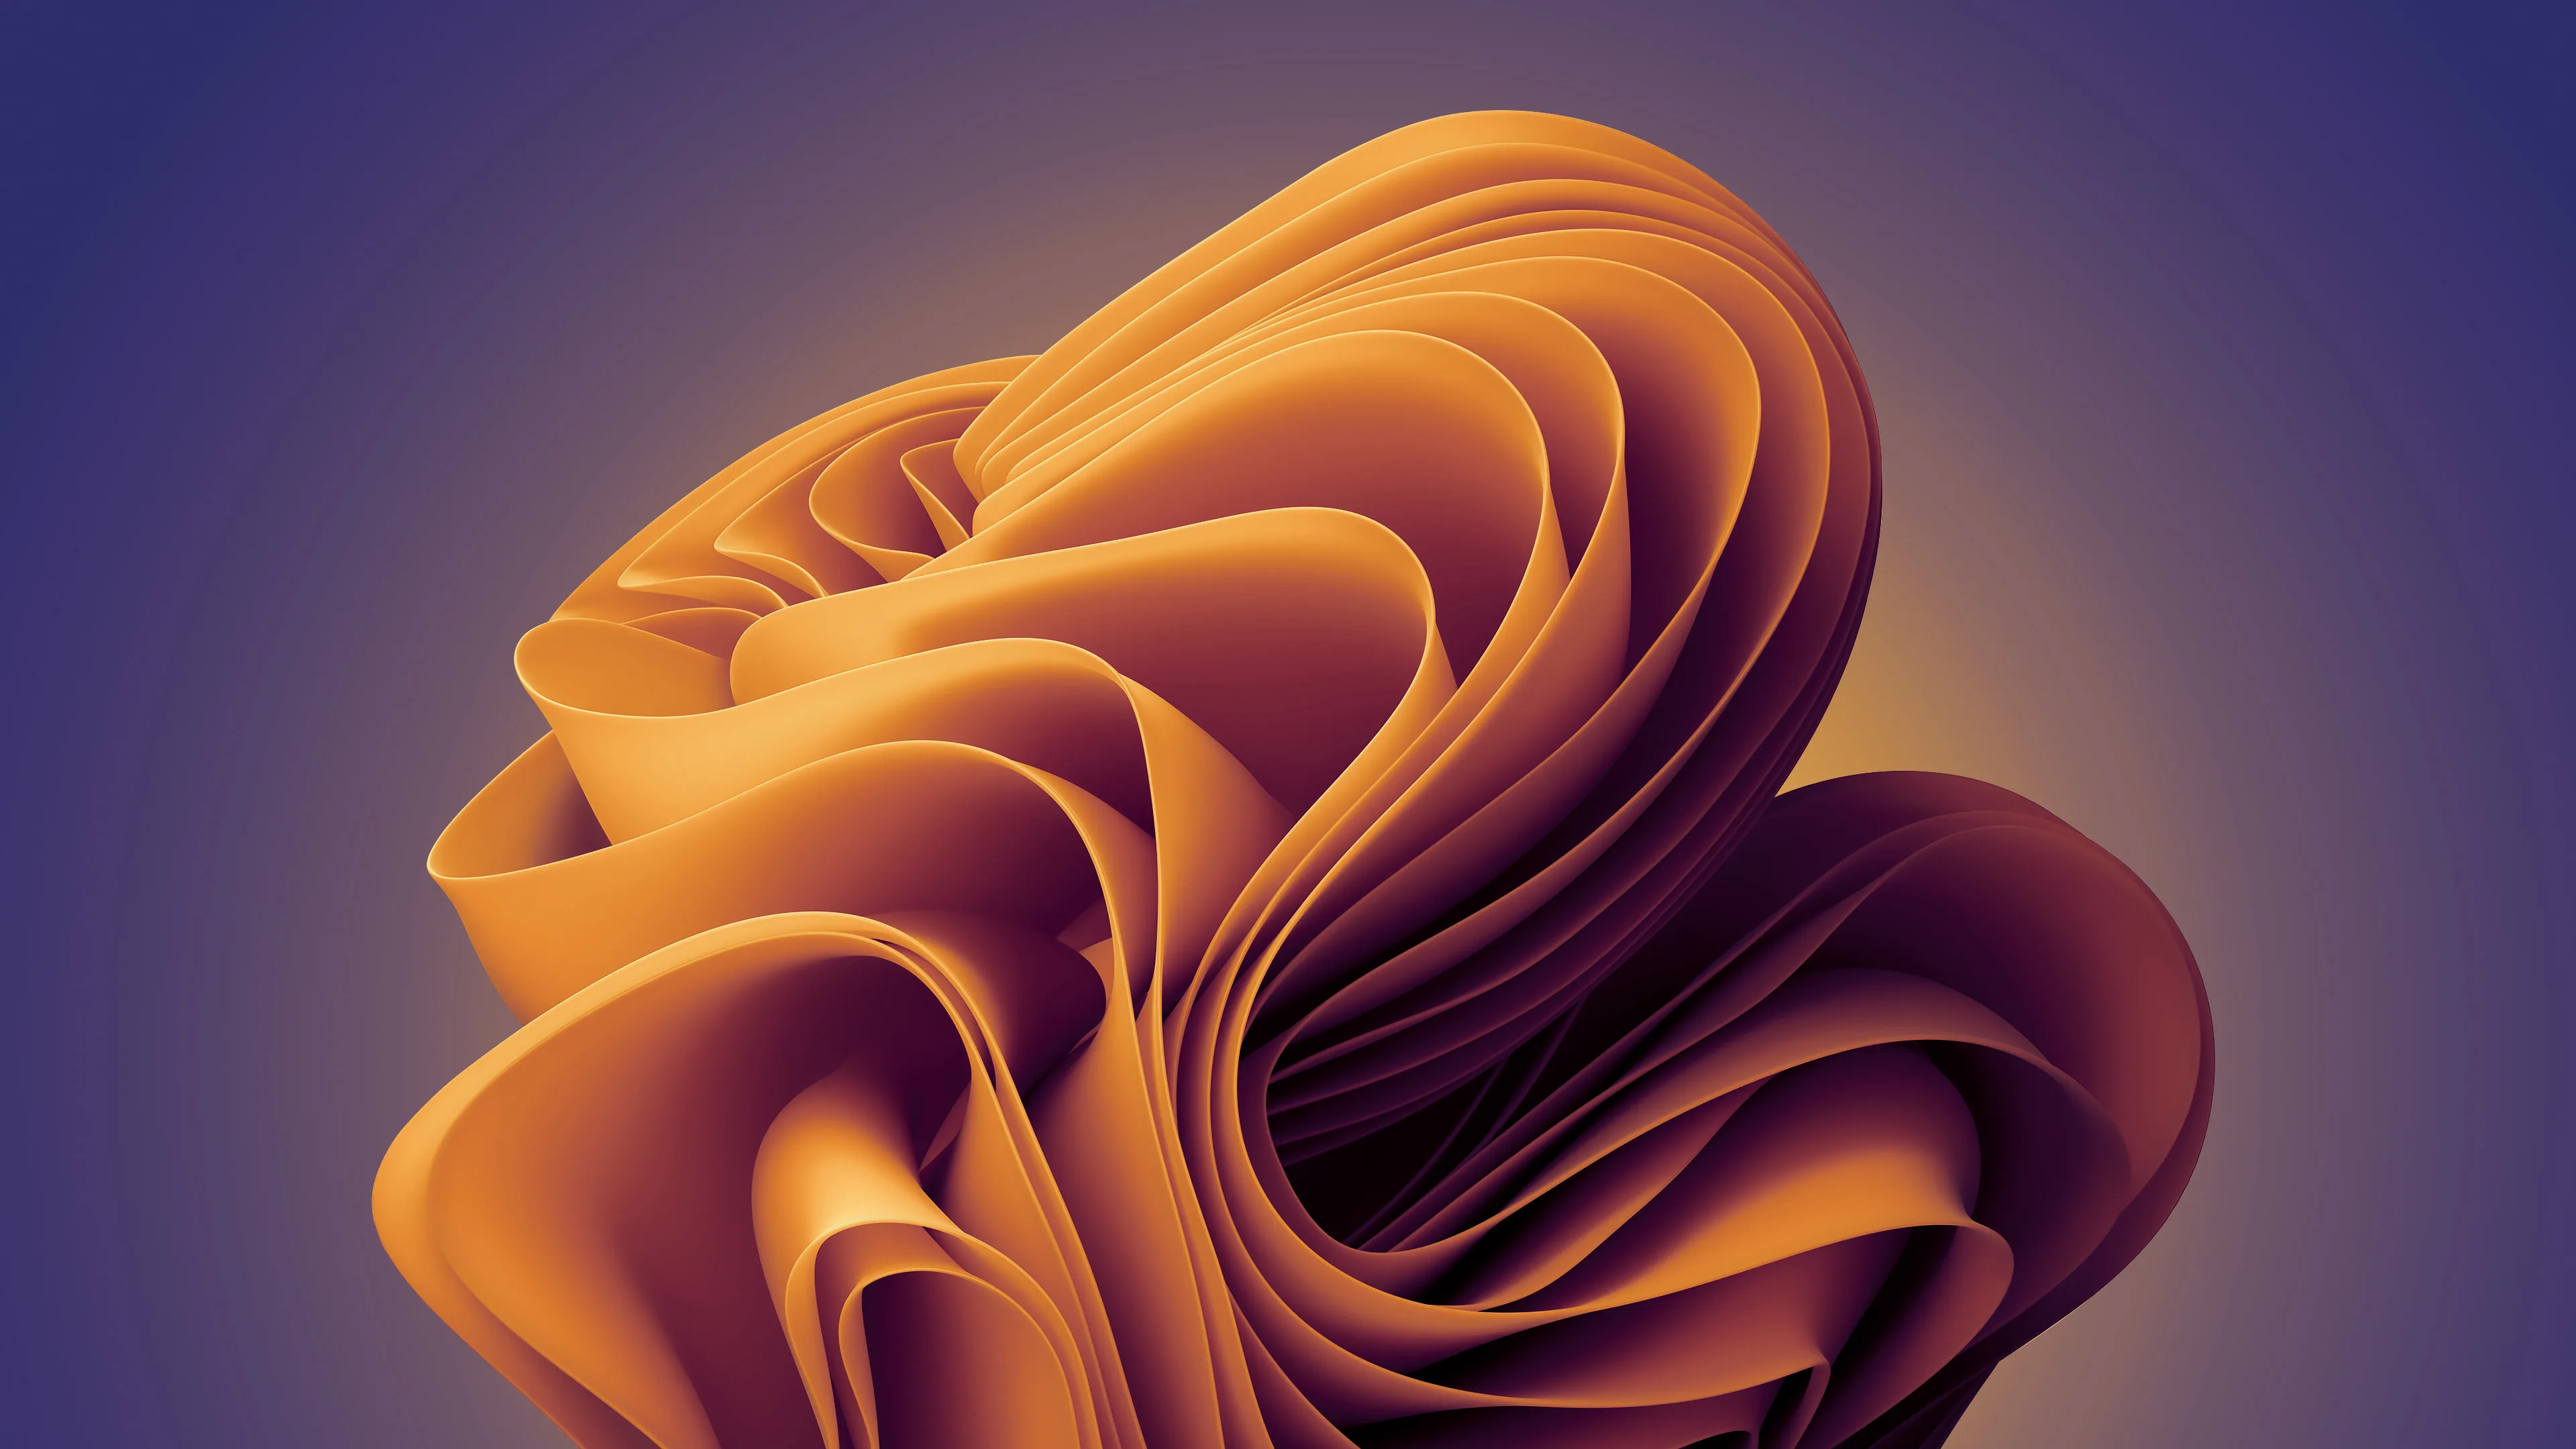 Windows 11 Abstract Gradient Orange Bloom 4K Wallpaper - Pixground